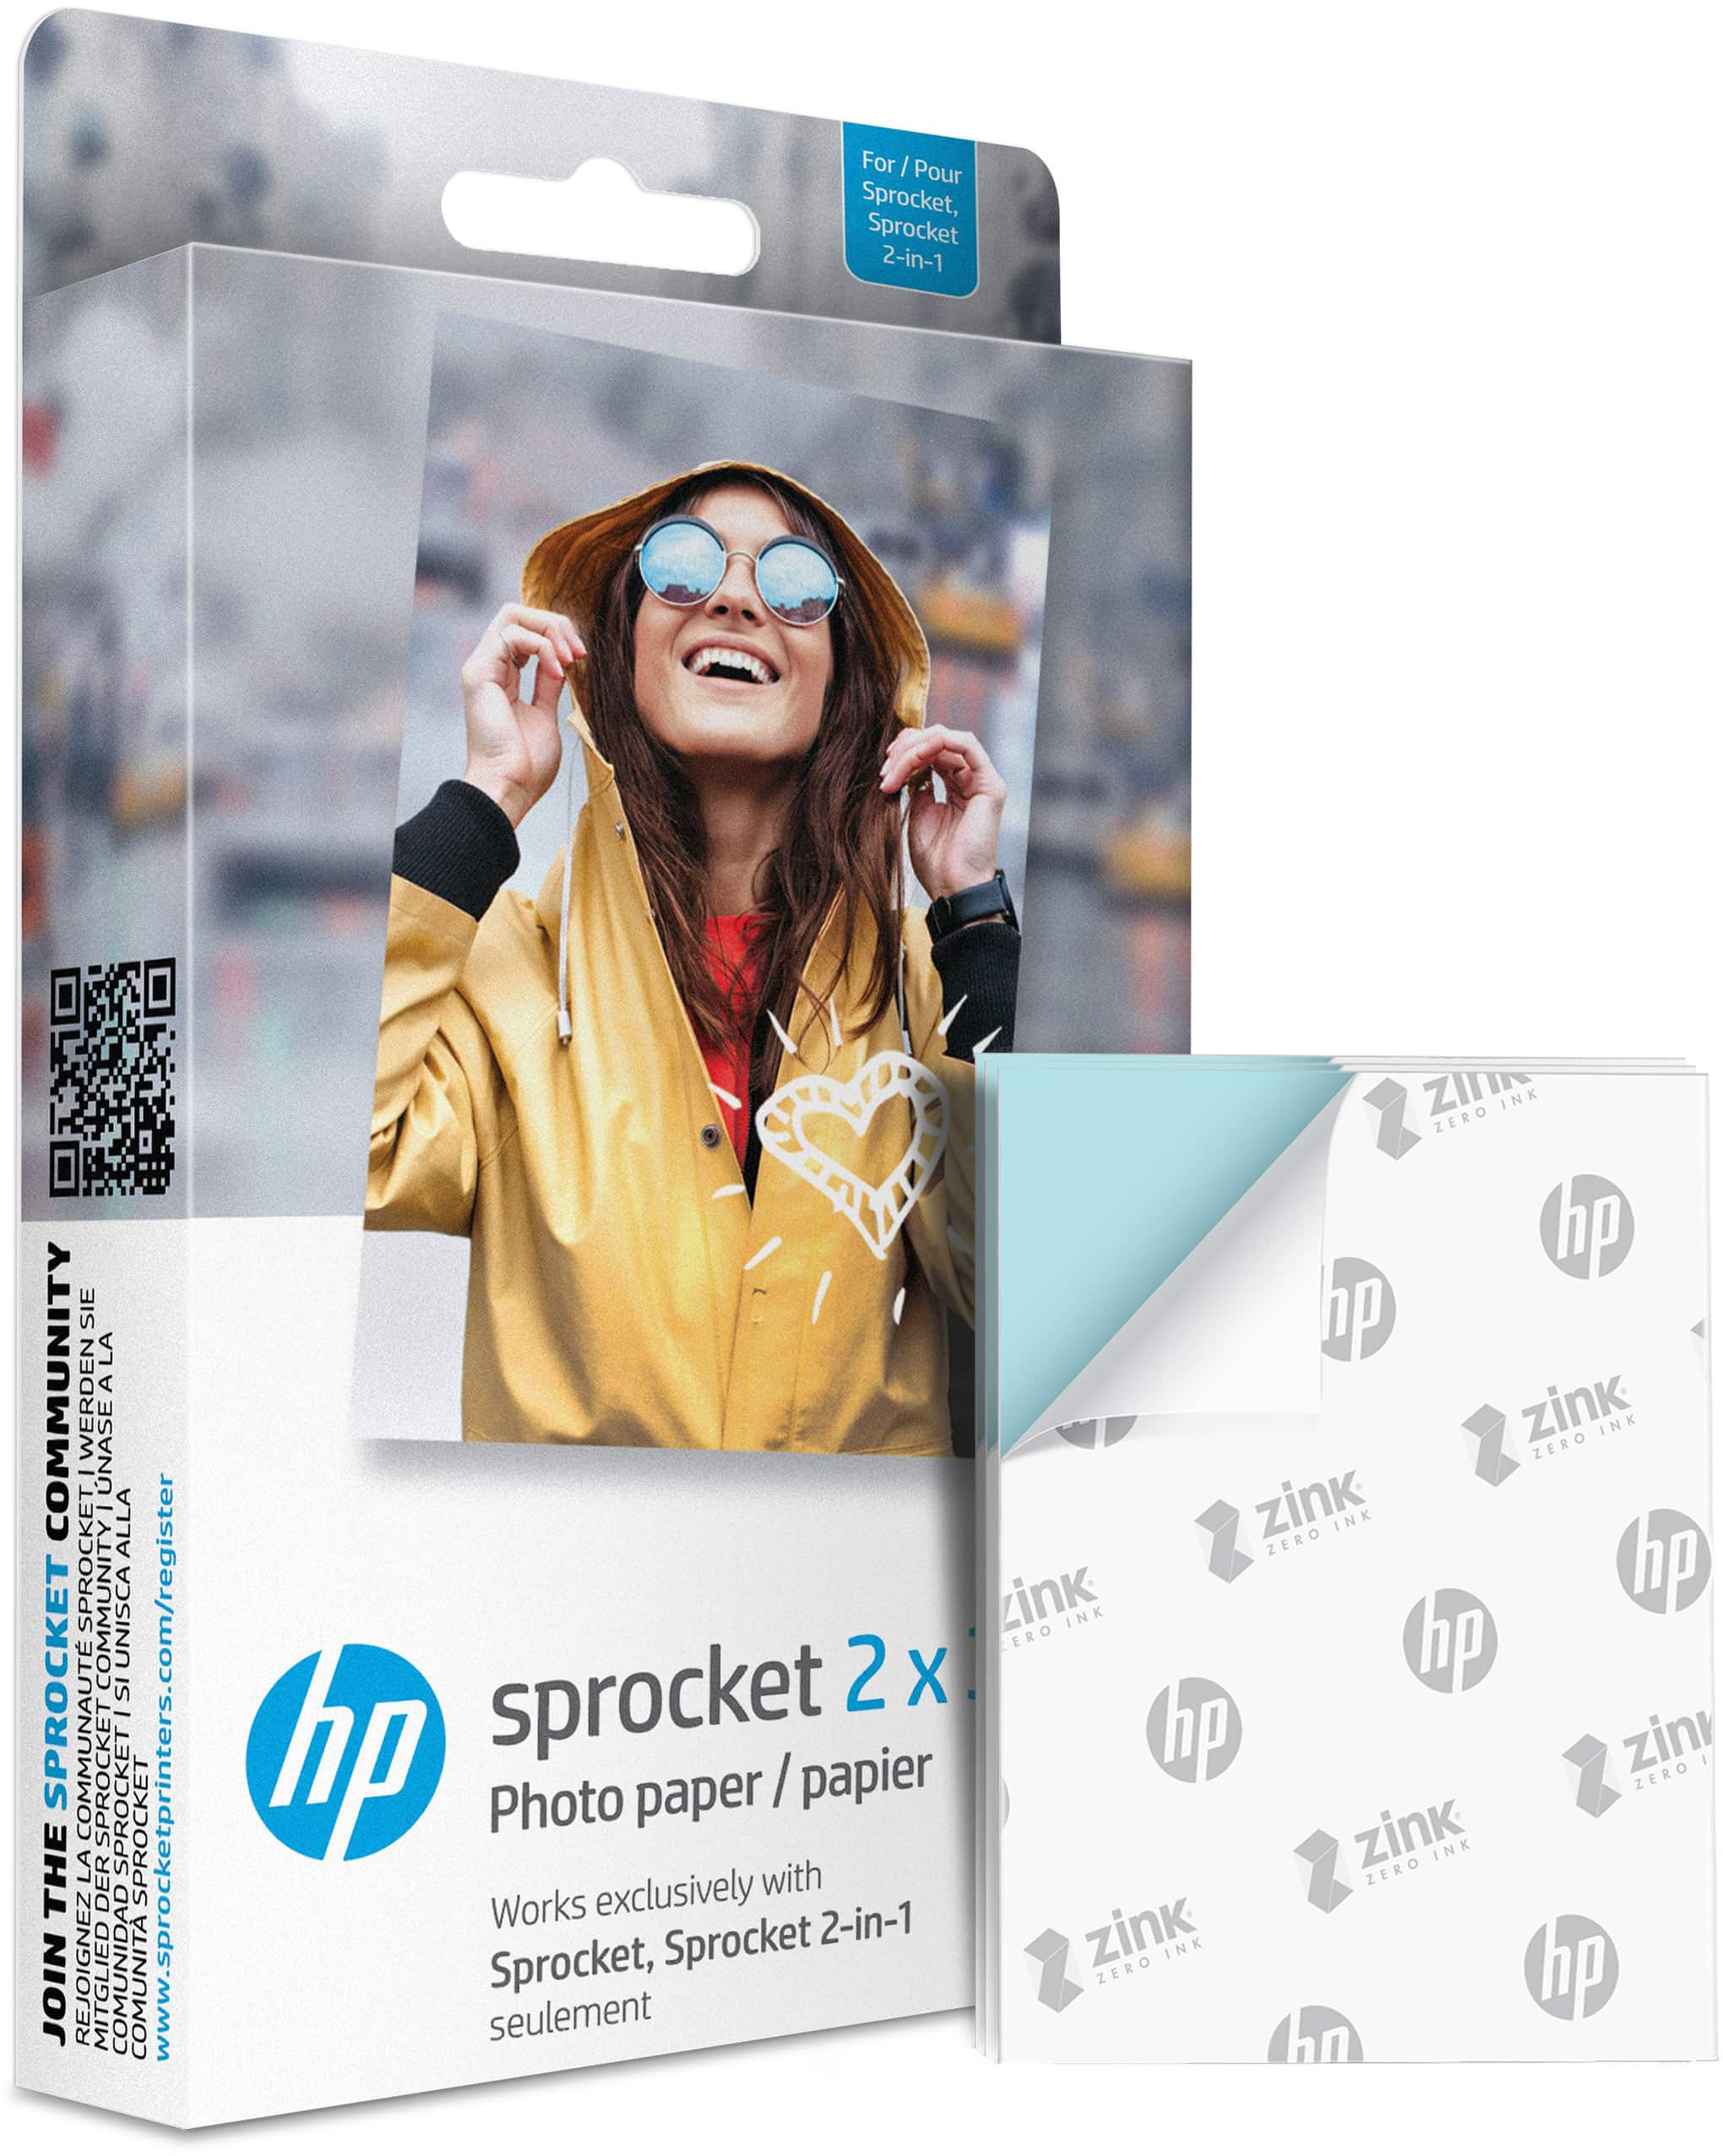 Wijde selectie Opnemen forum HP Sprocket 2x3" Zink Photo Paper (50 Sheets) HPIZ2X350 - Best Buy